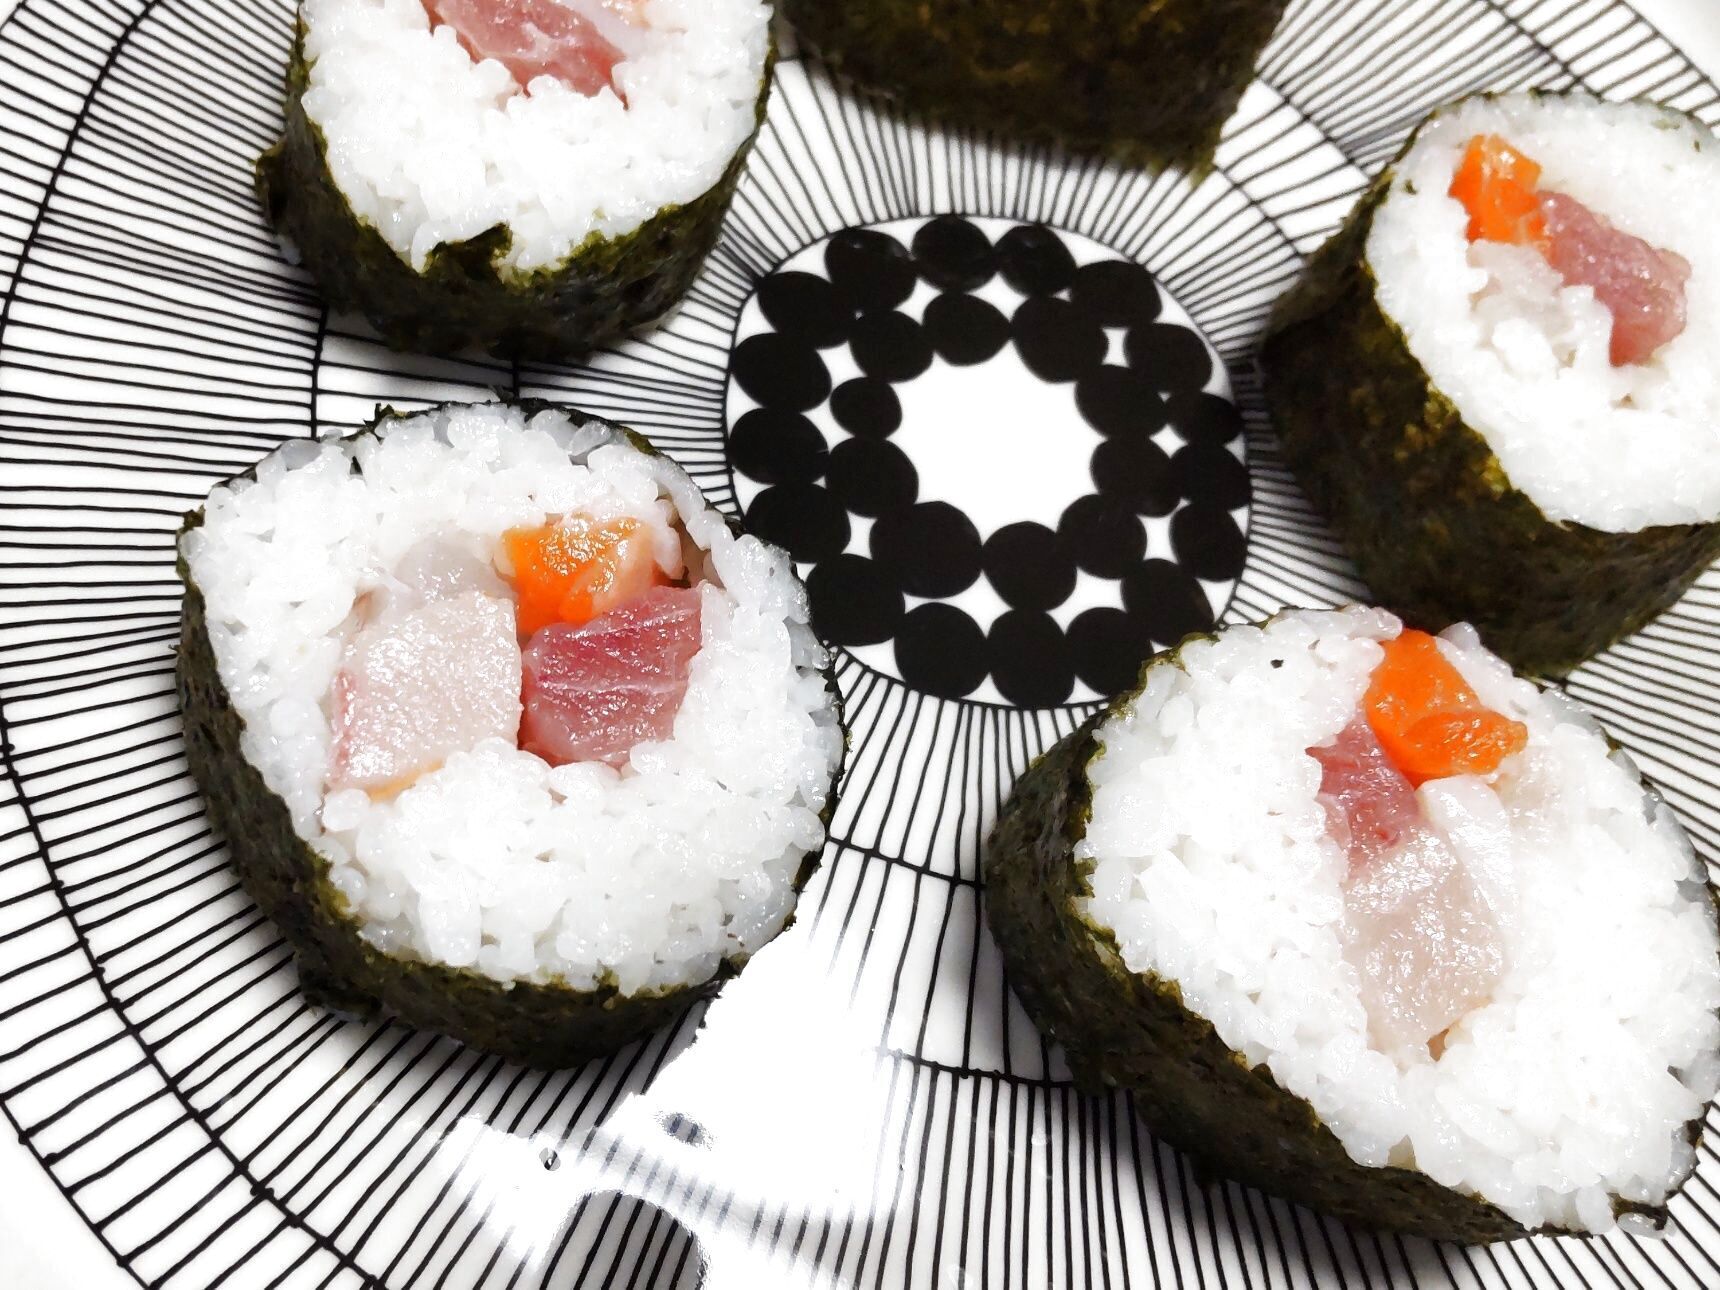 こちらは、お刺身パック5種類をたっぷり入れた海鮮太巻き寿司です。